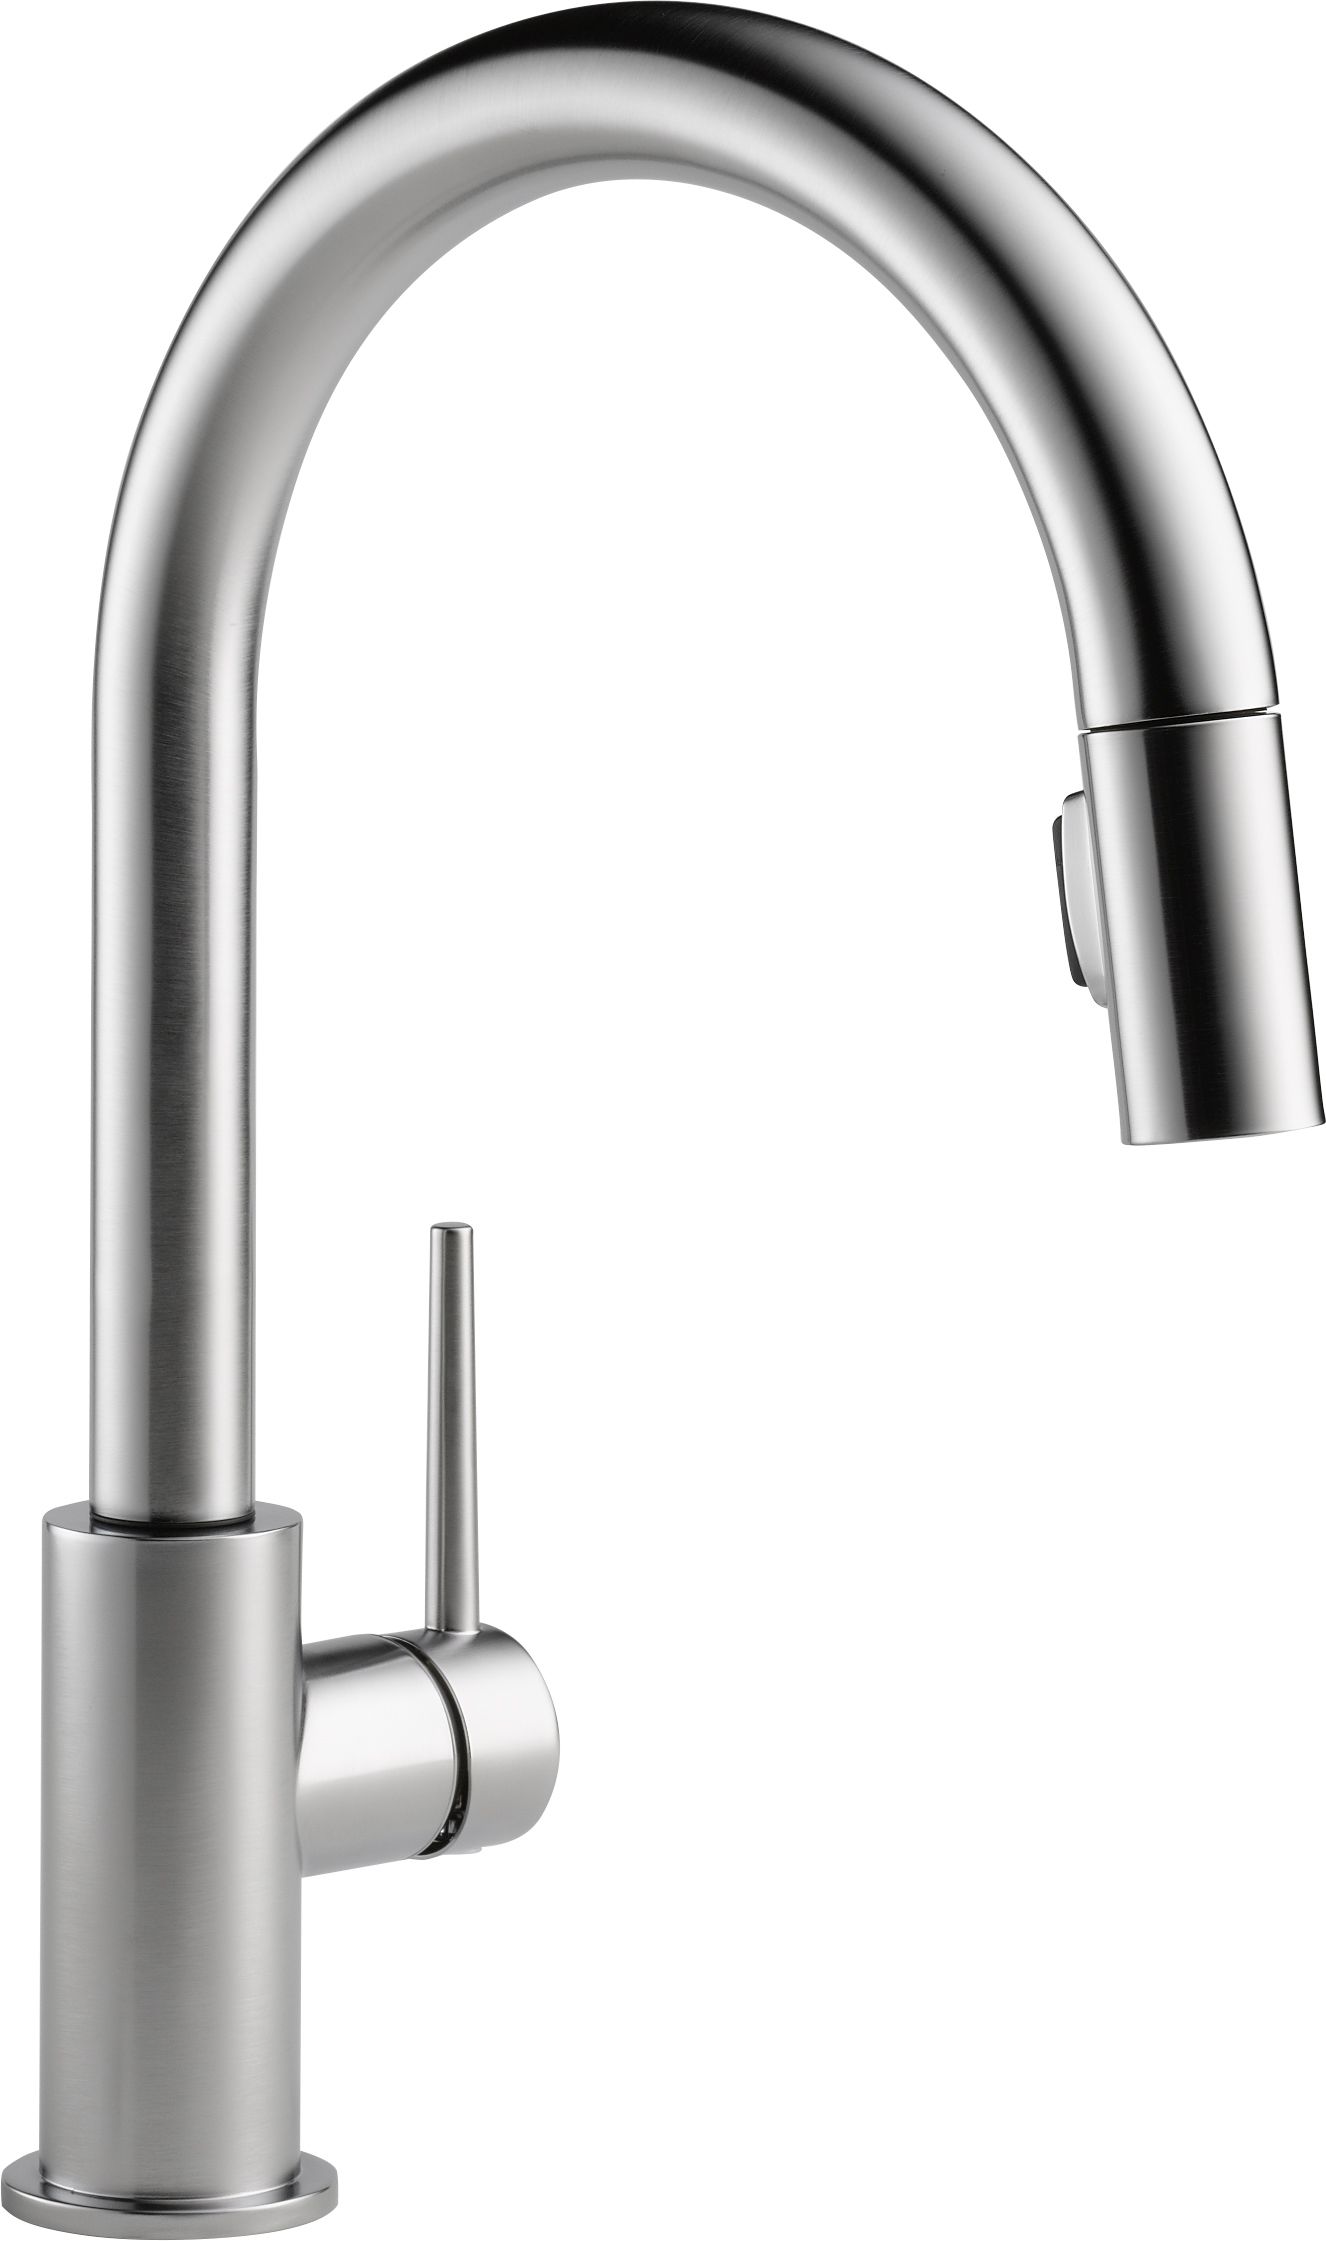 Delta Kitchen Faucets Build